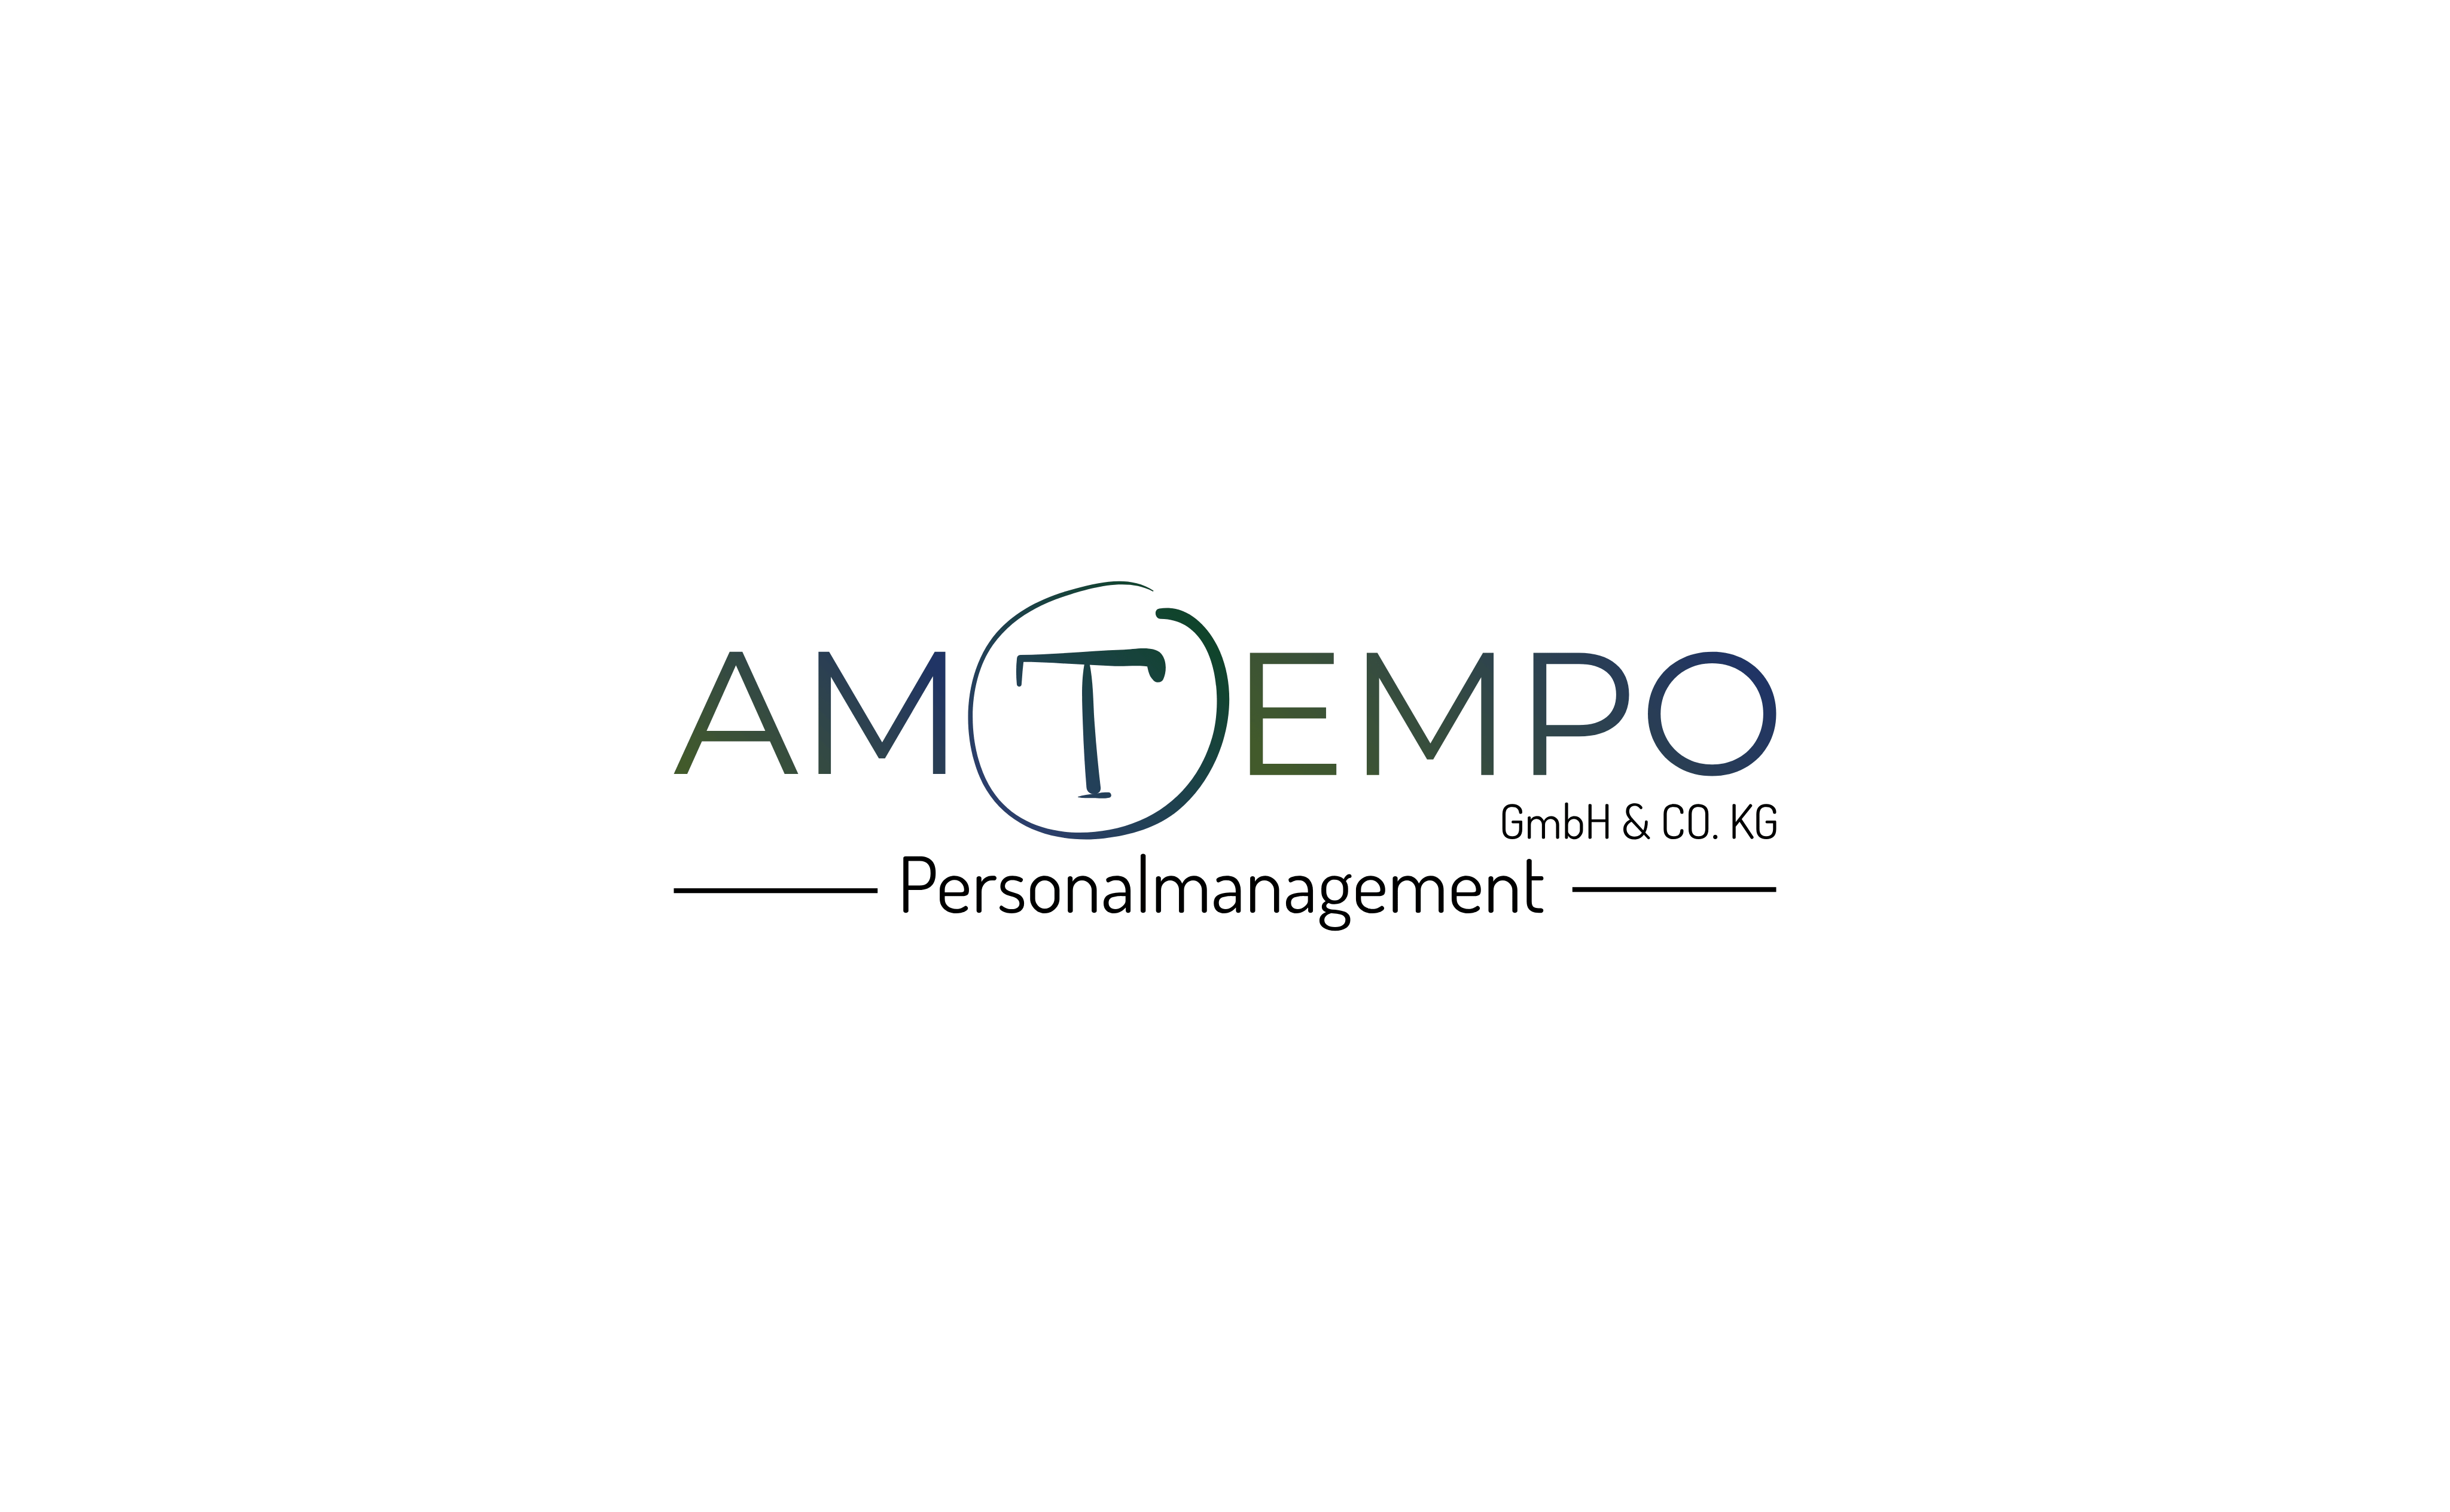 Amtempo Personalmanagement Gmb H & Co.KG